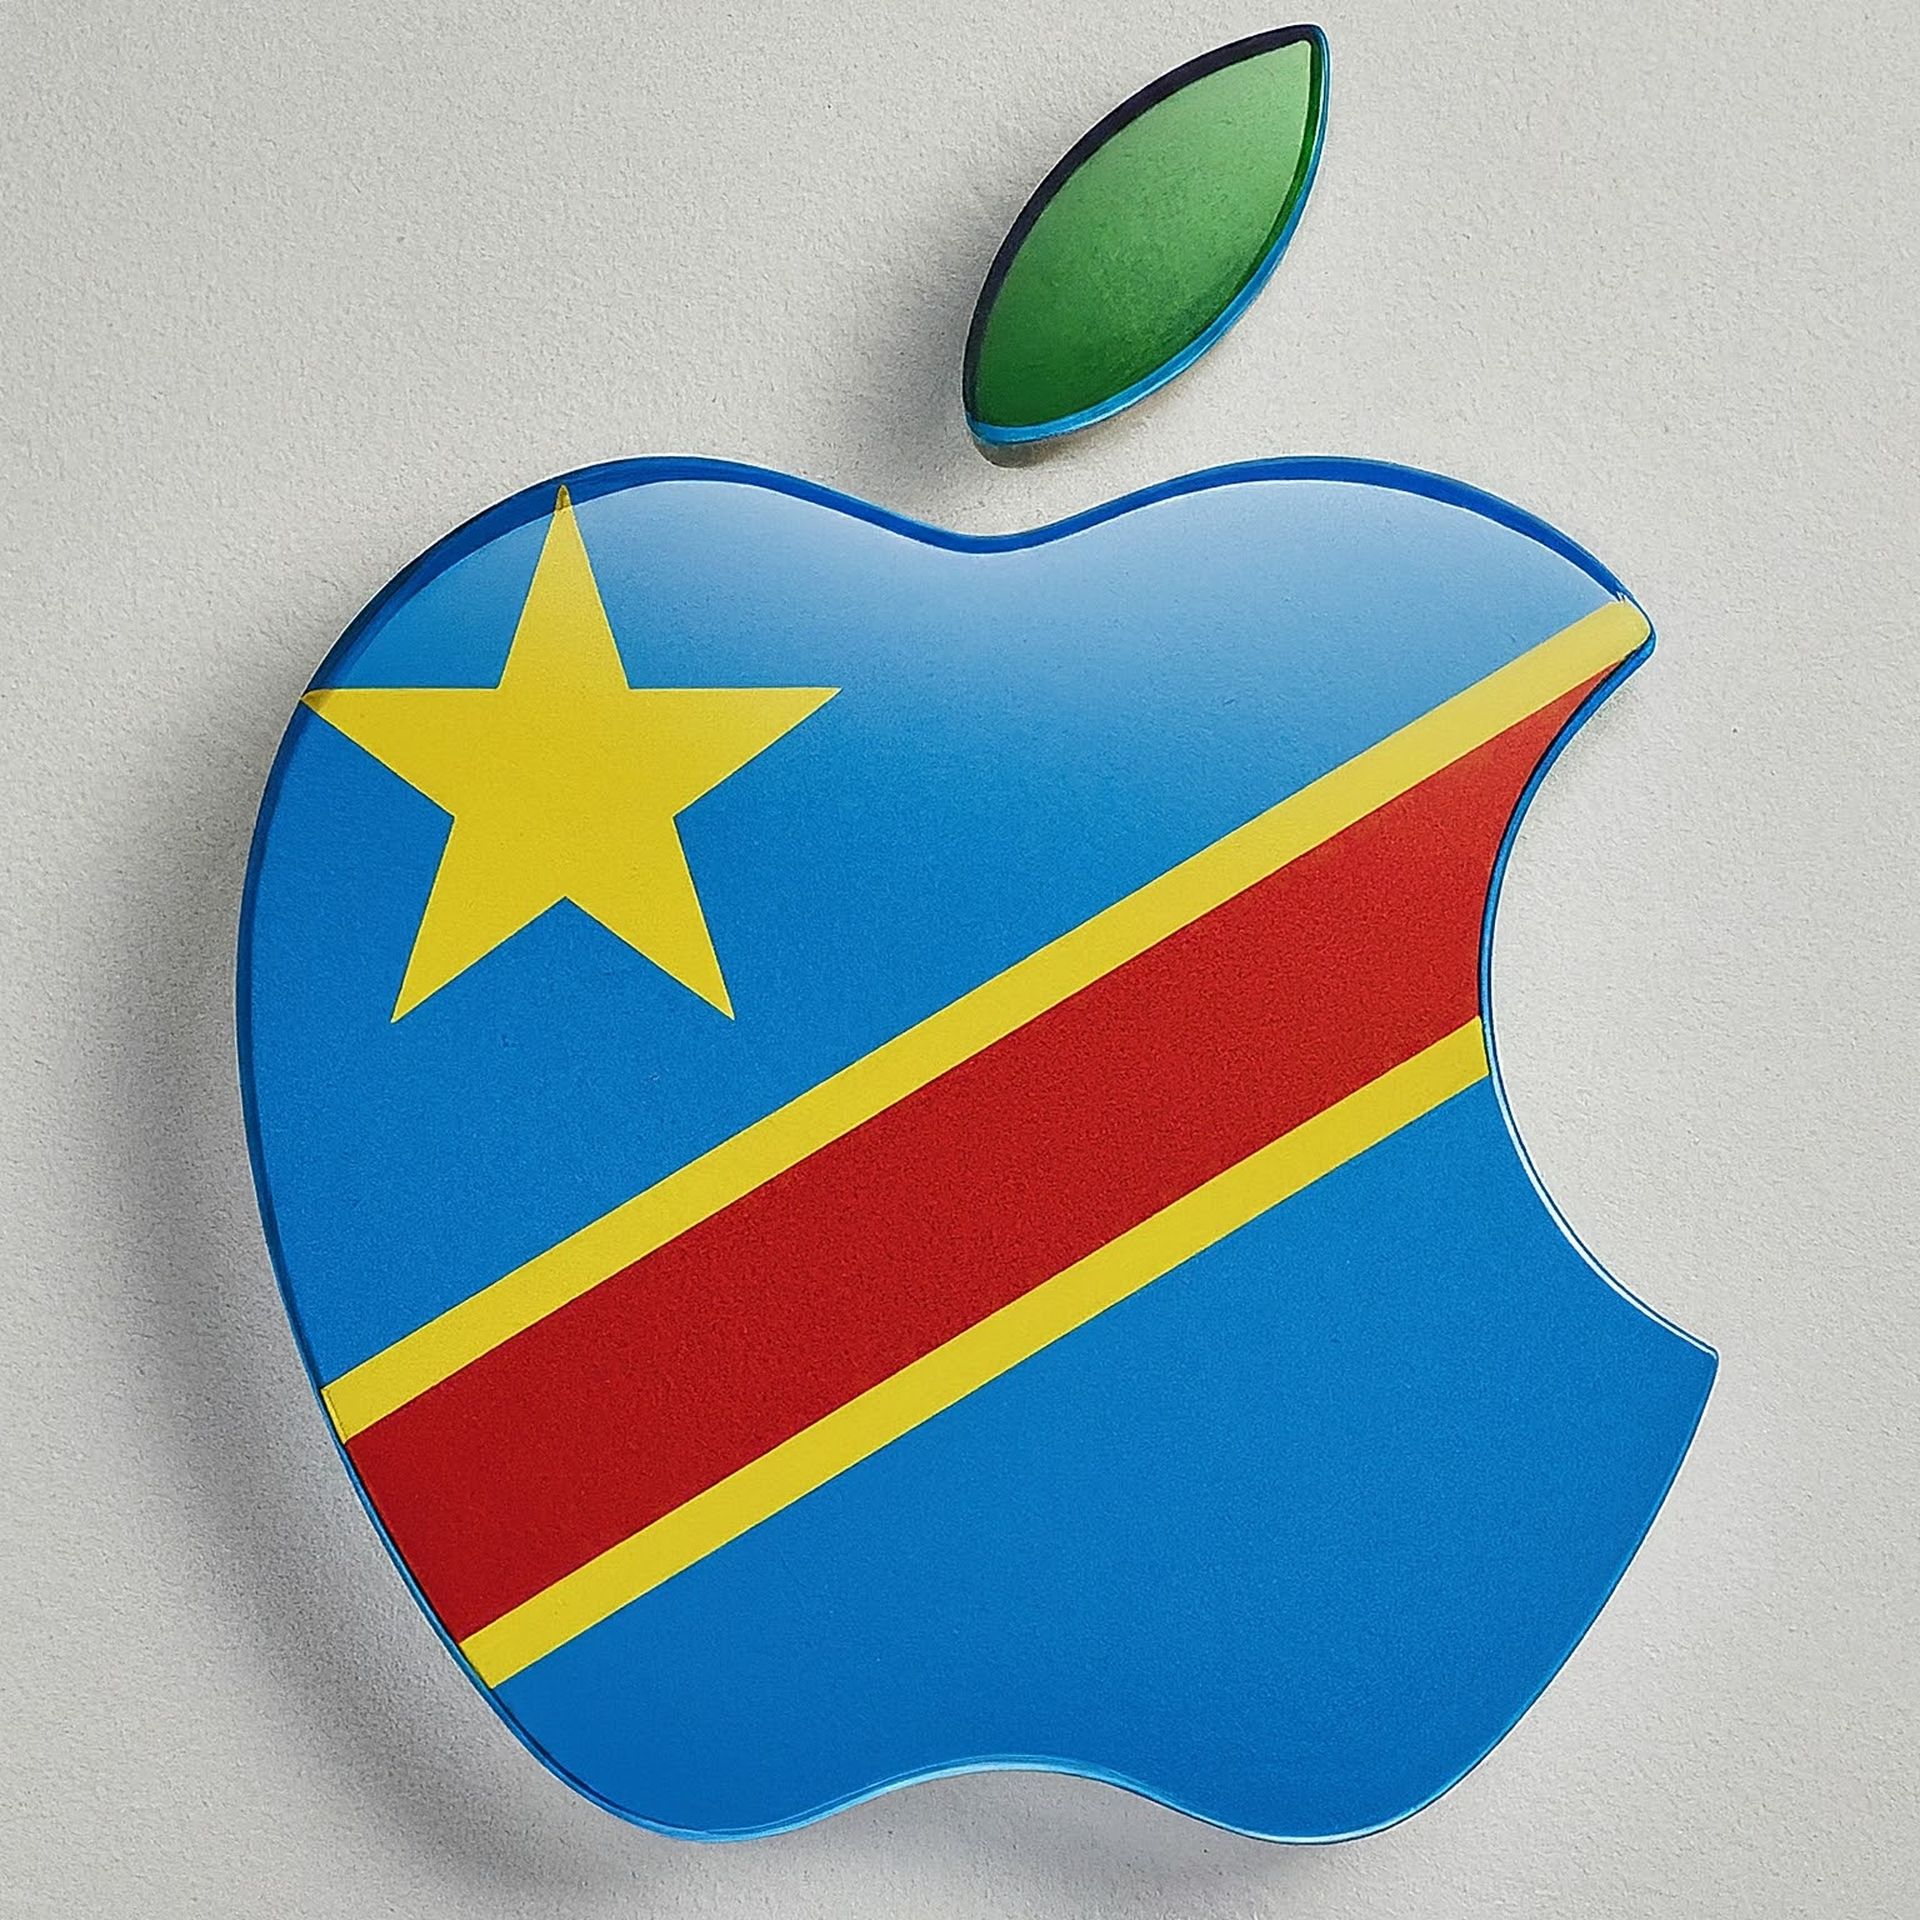 Apple wird beschuldigt, Mineralien im Zusammenhang mit dem Krieg in der Demokratischen Republik Kongo verwendet zu haben